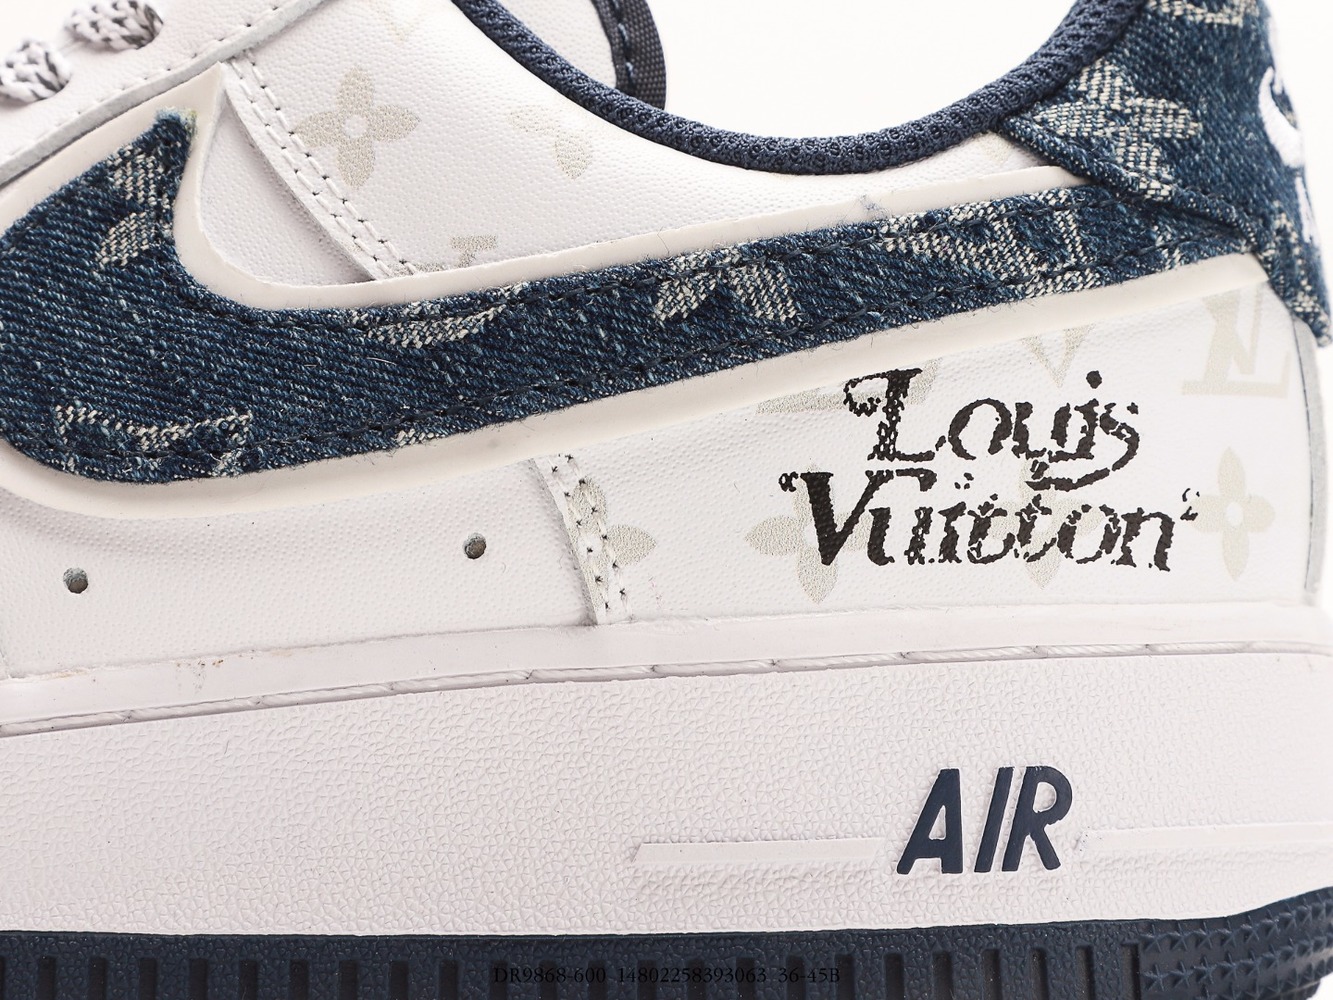 Louis Vuitton x Nike Air 1 07 pilot (eine spezialeinheit für weiße/marine/Vuitton) (daily 9868-600